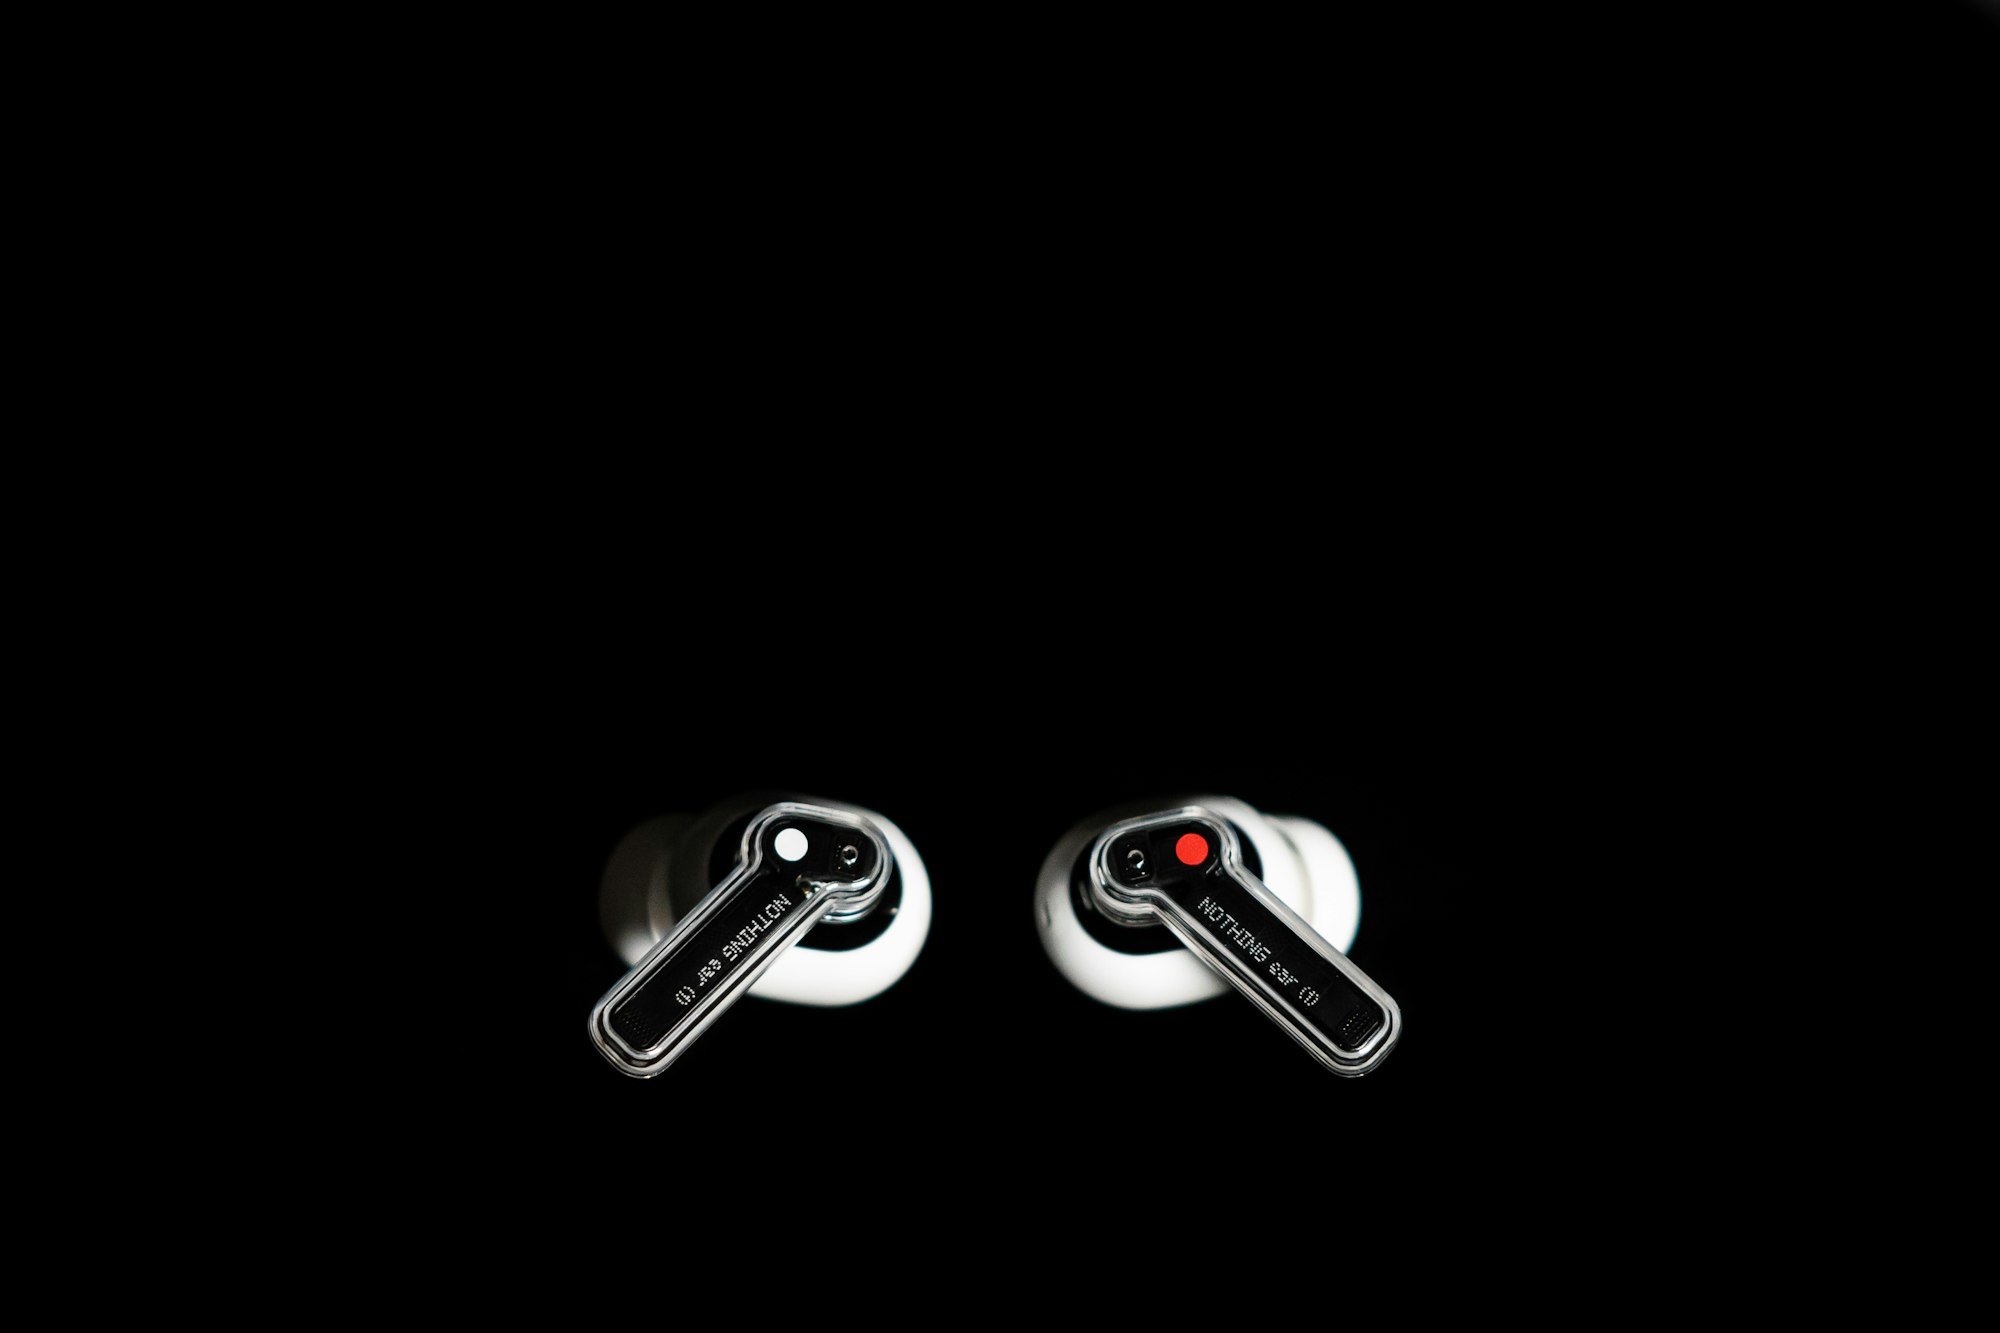 Беспроводные наушники Ear (1) получили поддержку Siri